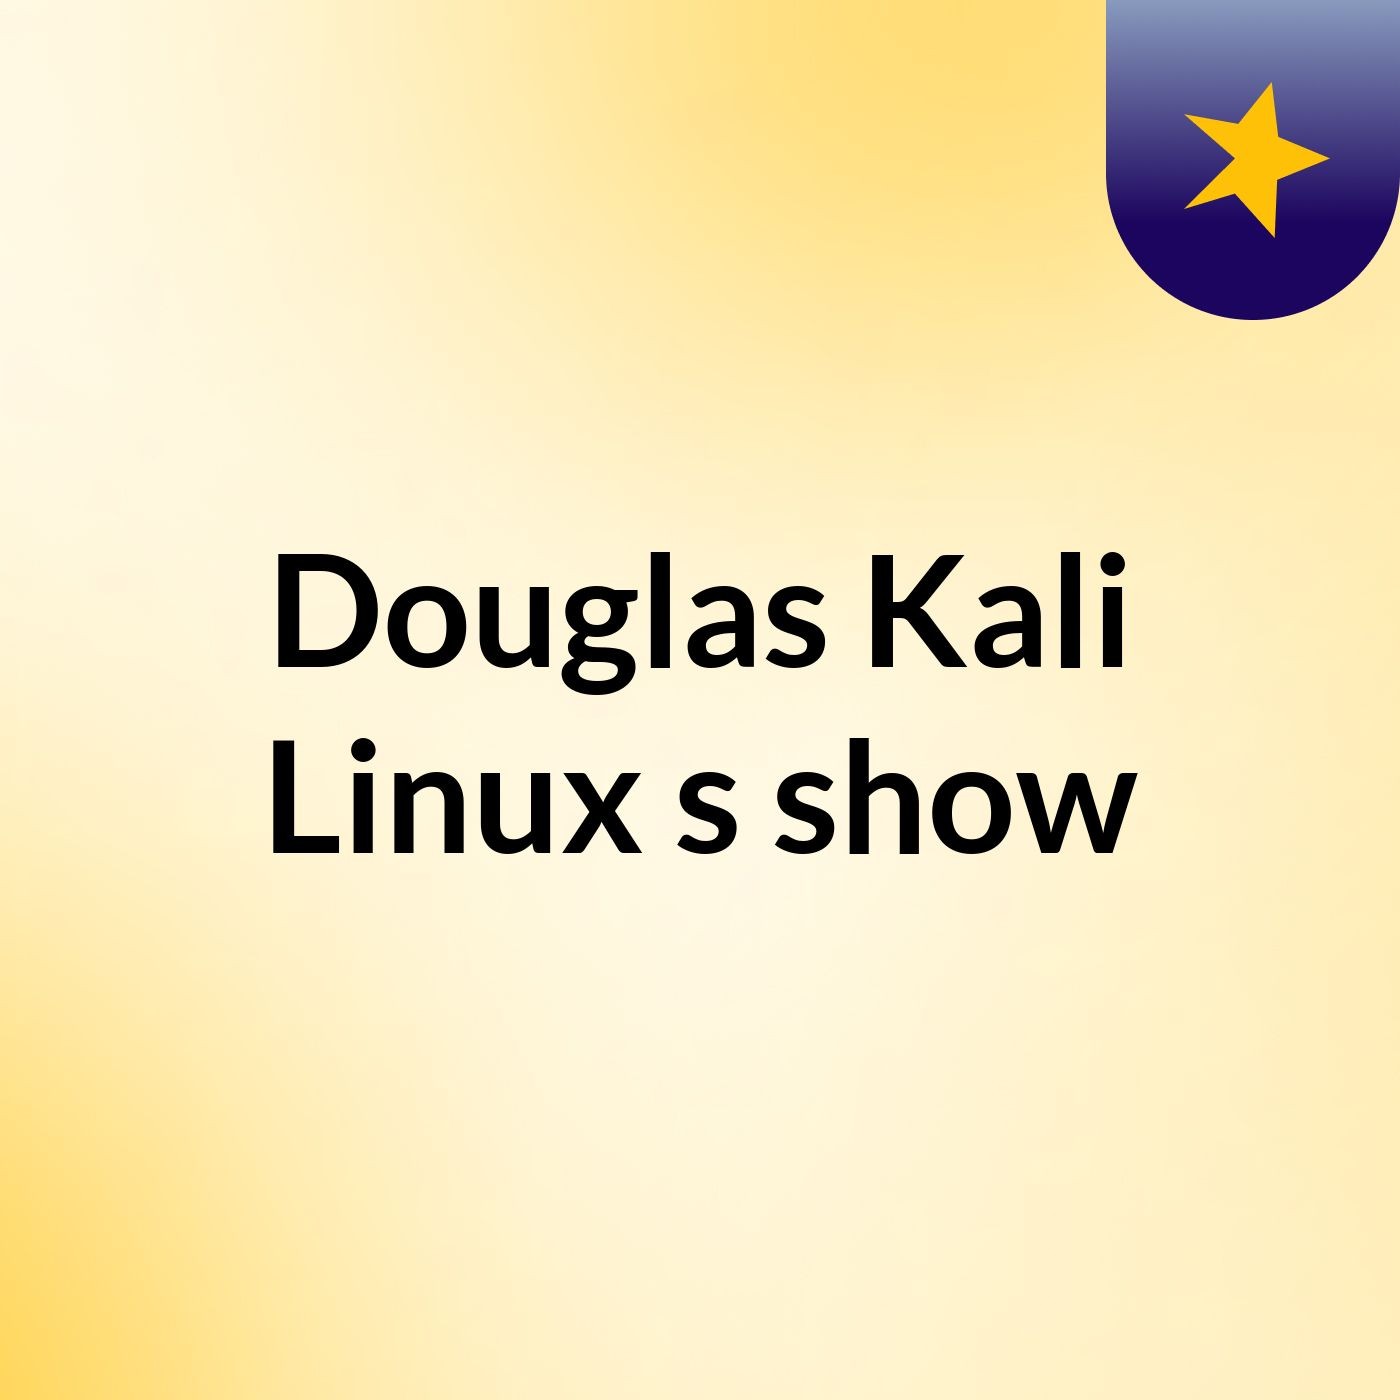 Douglas Kali Linux's show